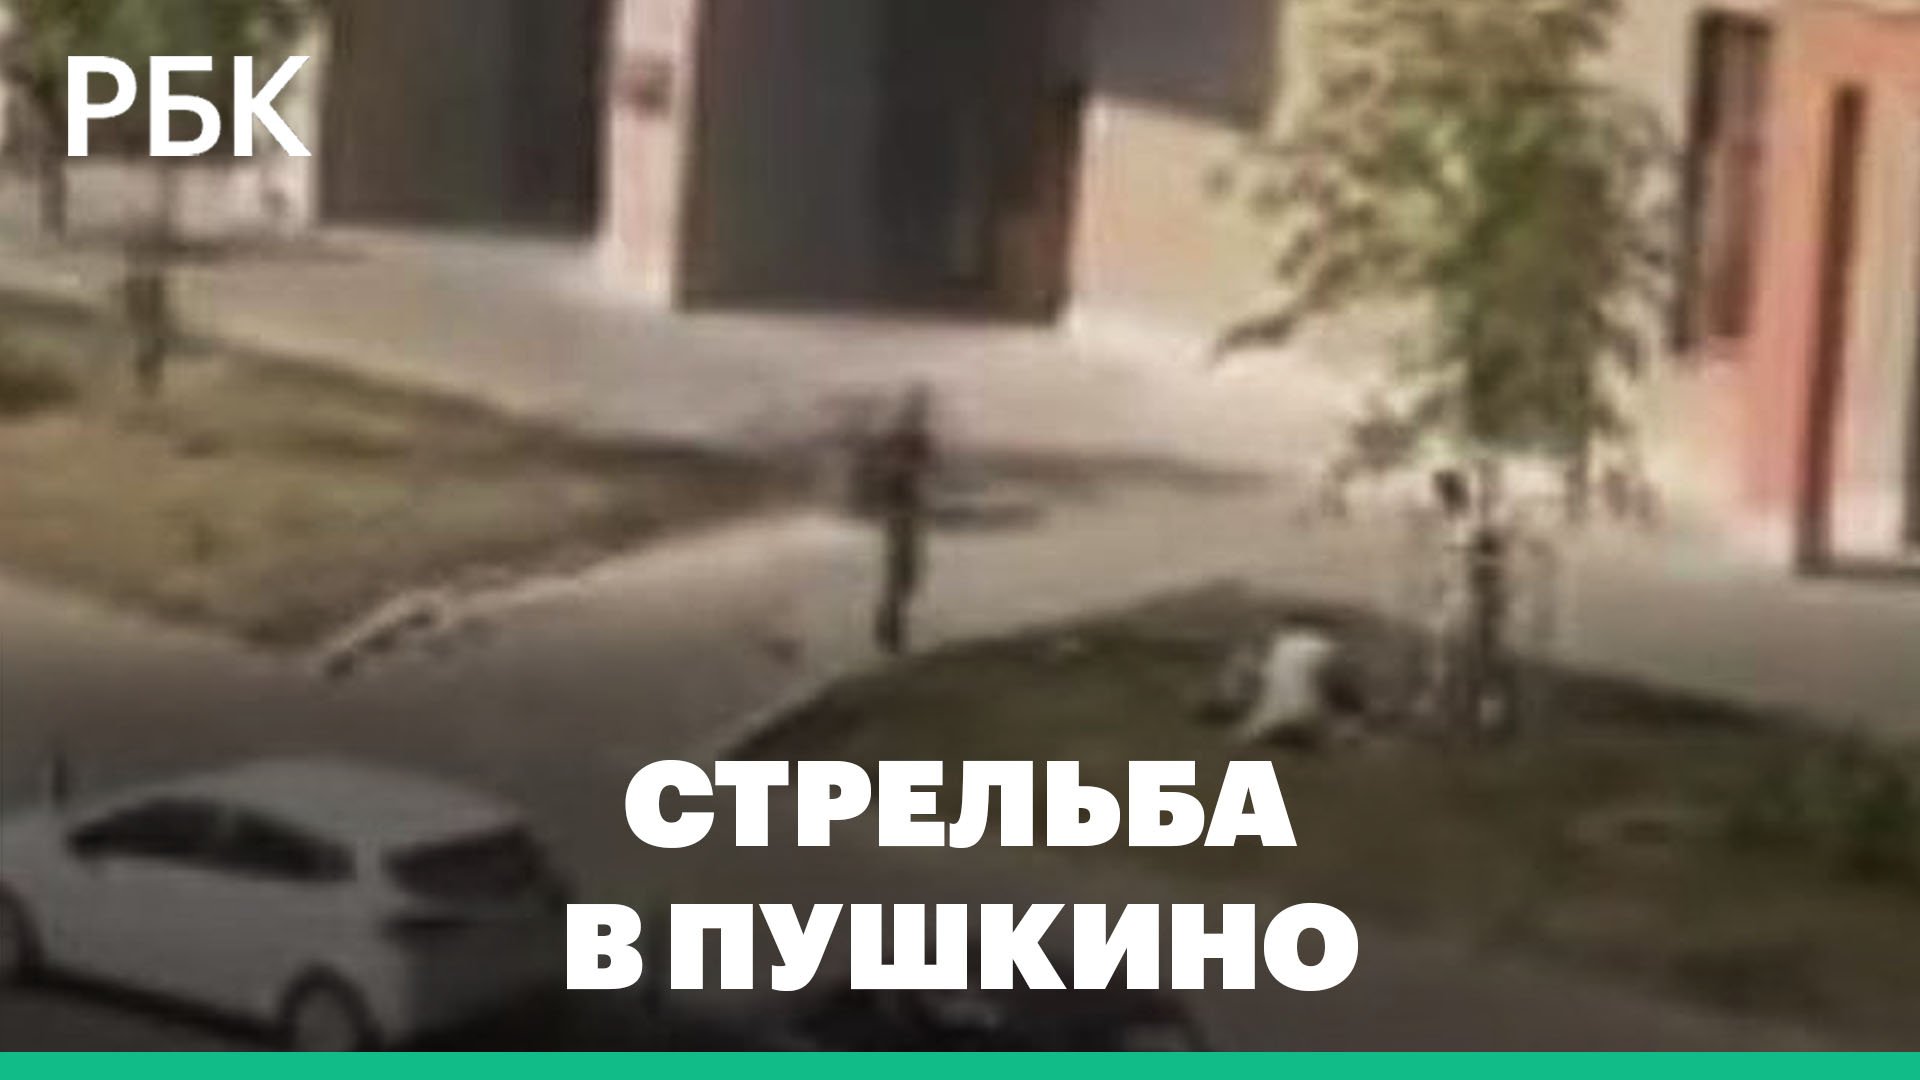 Первые кадры с места стрельбы в Пушкино